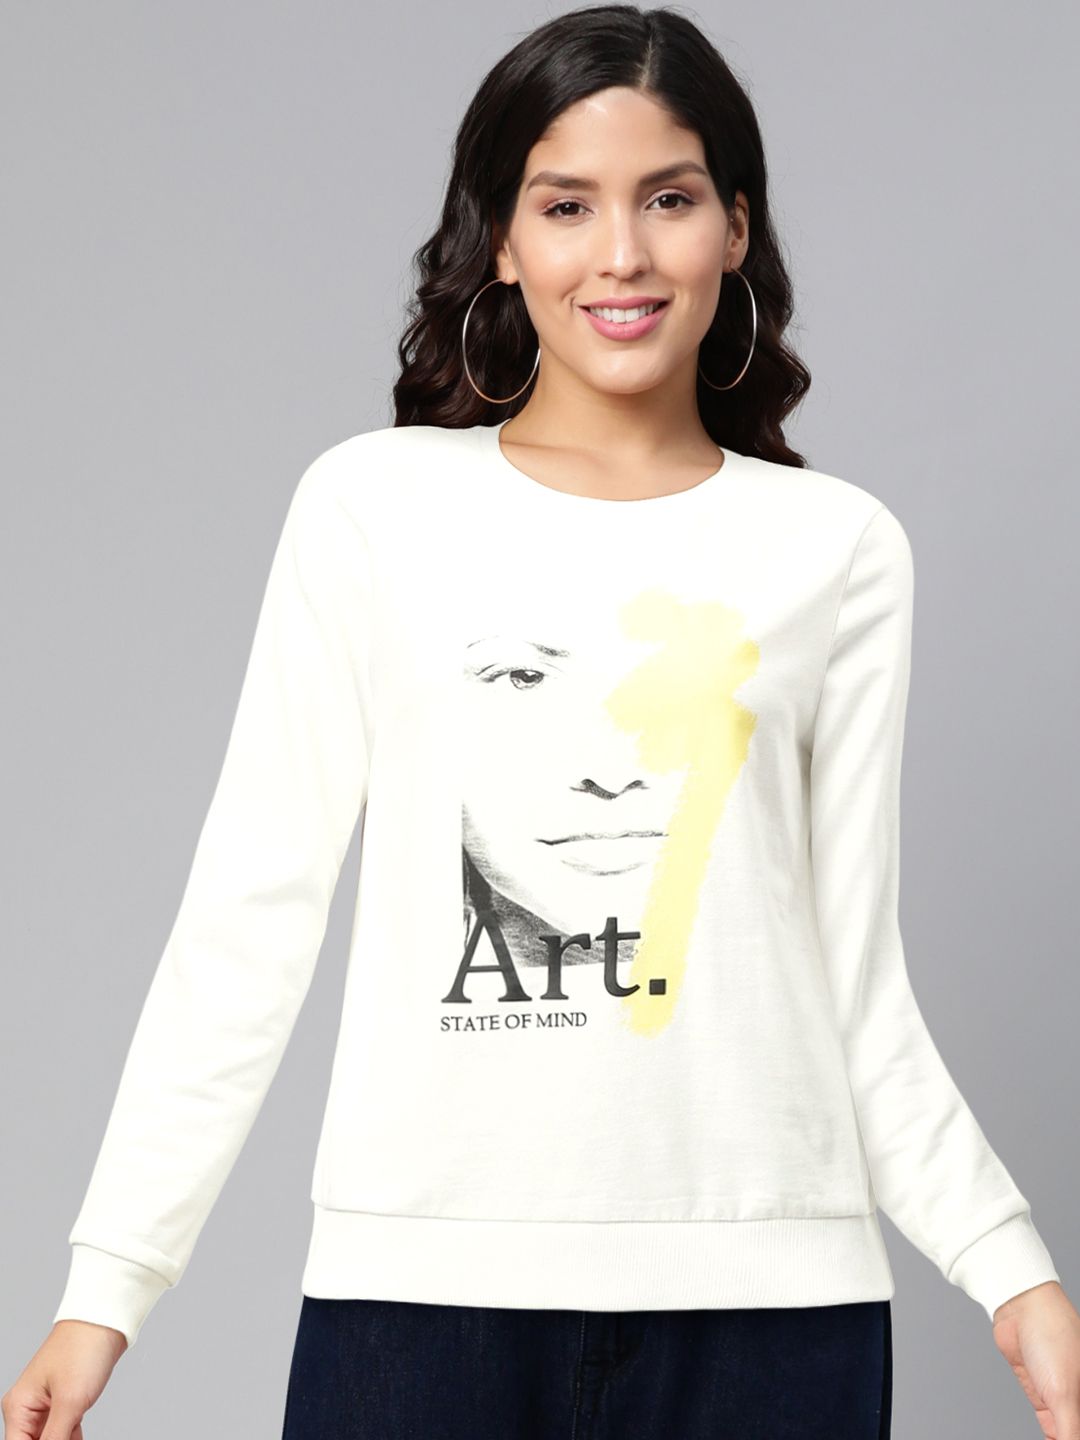 Vero Moda Women White & Yellow Printed Sweatshirt Price in India